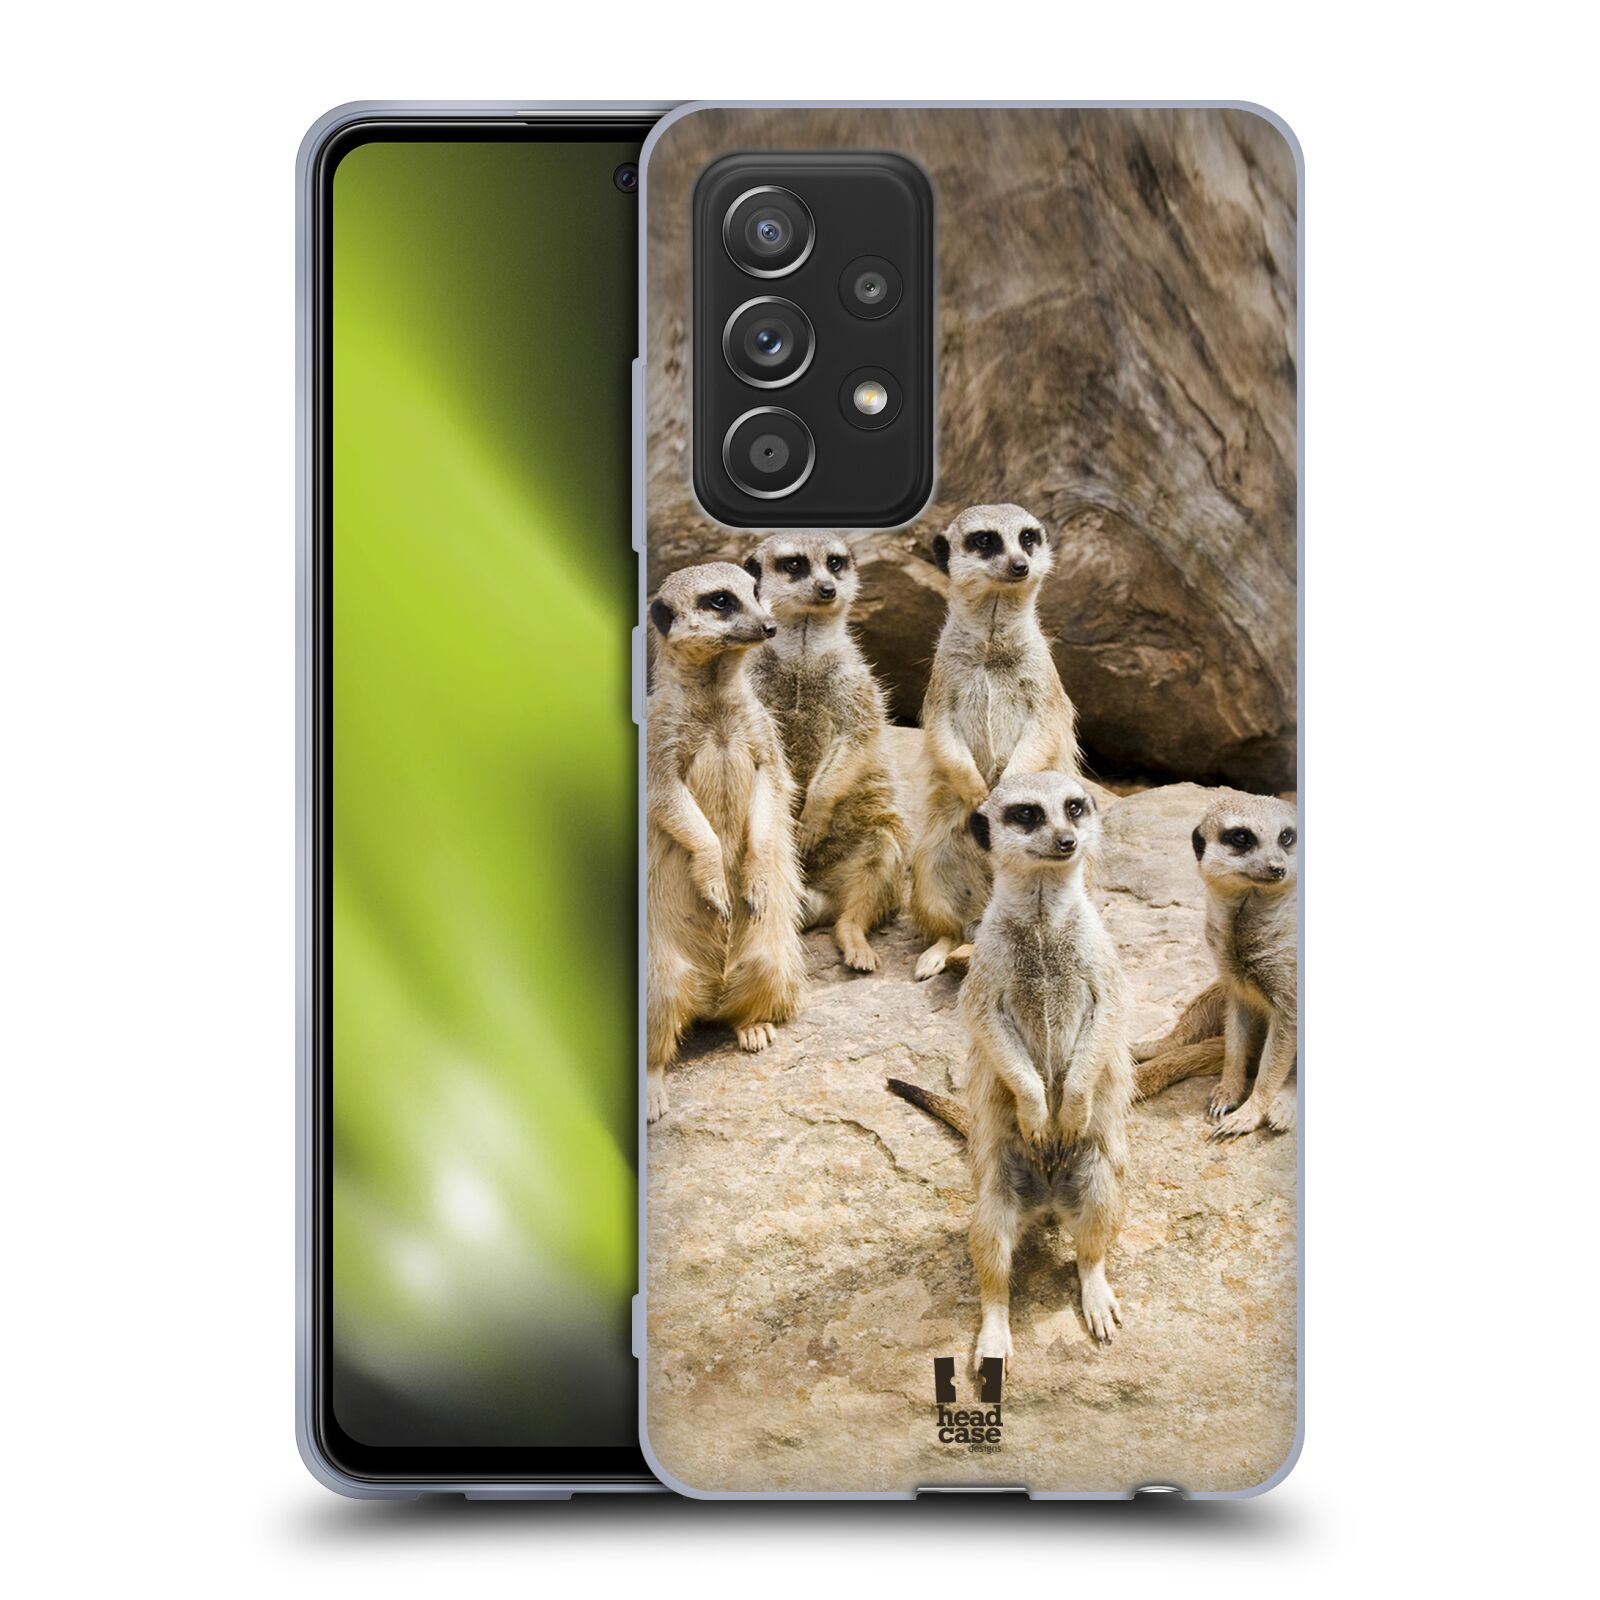 Plastový obal HEAD CASE na mobil Samsung Galaxy A52 / A52 5G / A52s 5G vzor Divočina, Divoký život a zvířata foto SURIKATA